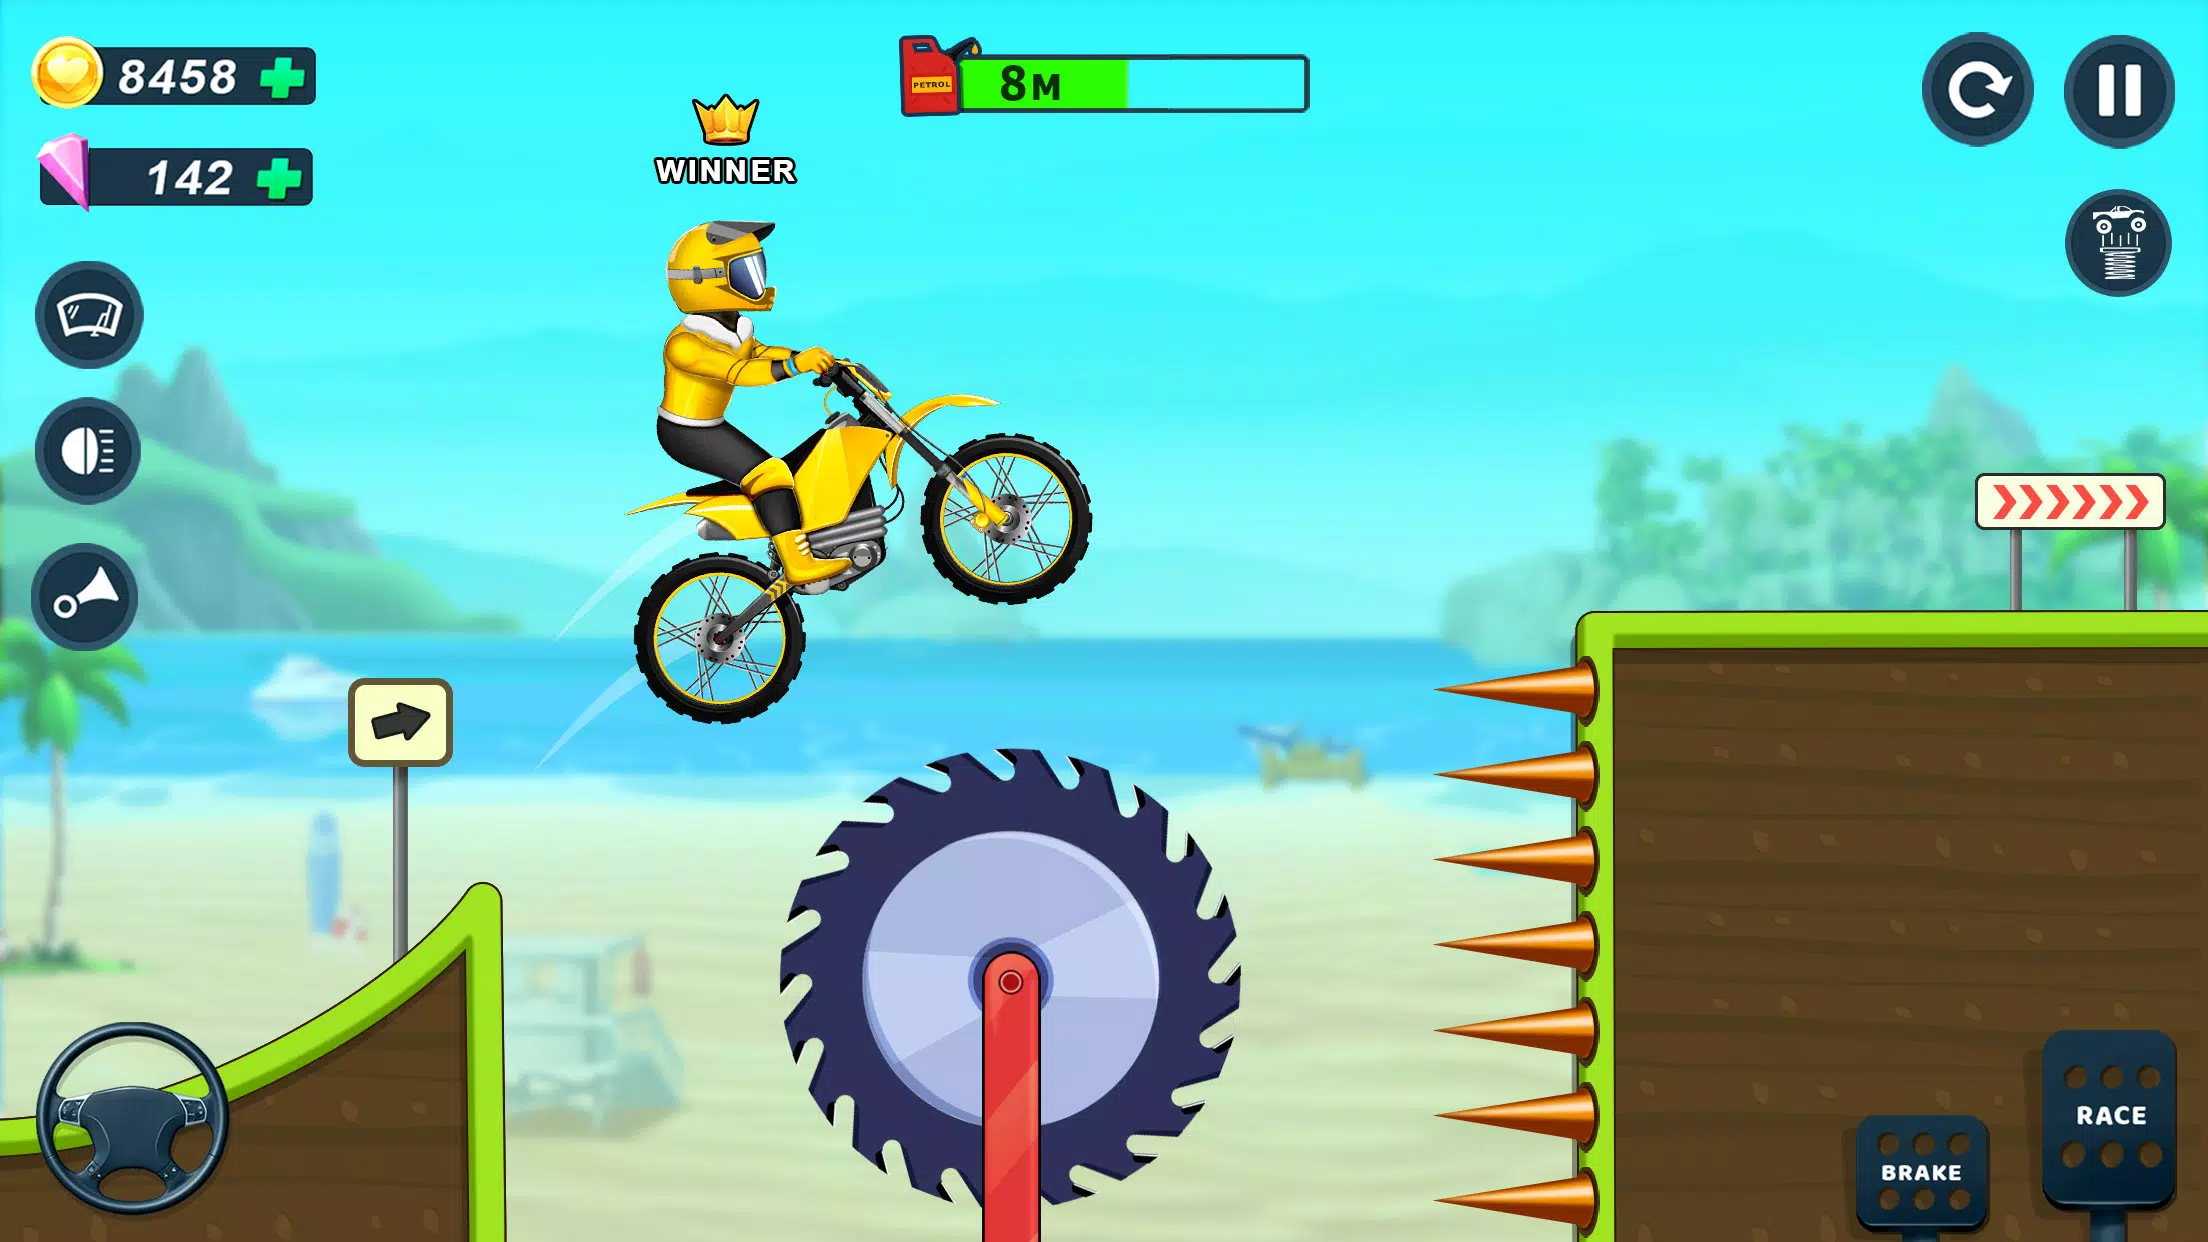 Moto Xtreme Rider - Jogo de Corrida de Motocicleta para Crianças Grátis: O  desafio da motos está prestes a começar. Ligue seus motores e ande com sua  motocross neste divertido jogo de corrida!::Appstore for  Android